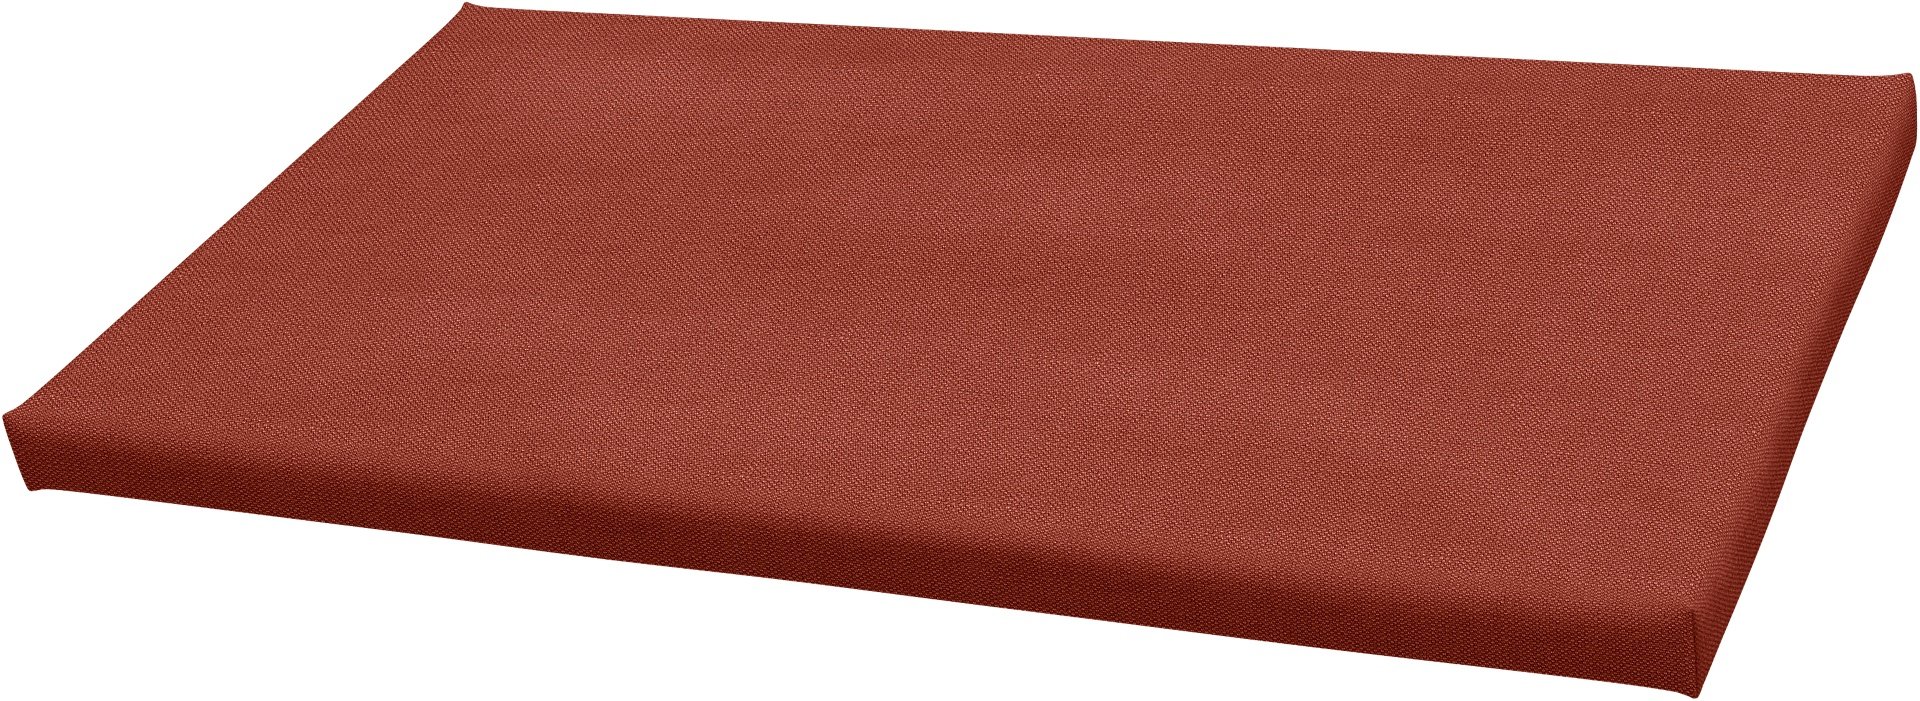 IKEA - Bankkamrat Cushion Cover 90x50x3,5 cm , Cayenne, Linen - Bemz